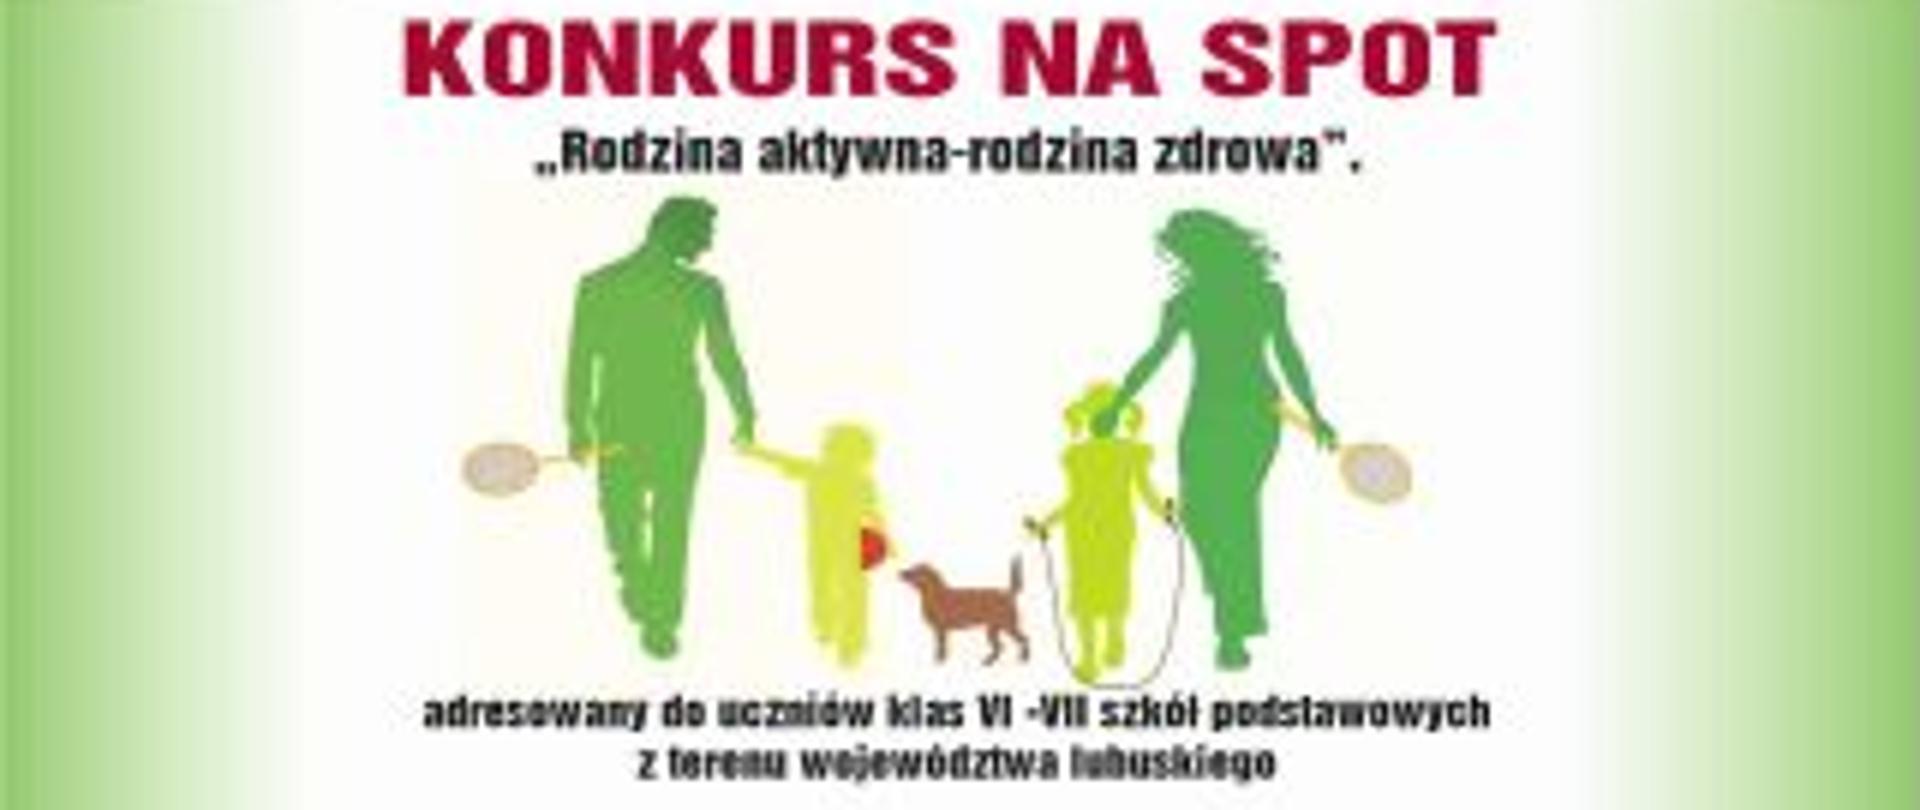 baner promujący konkurs na spot - Rodzina aktywna - rodzina zdrowa ( w tle rodzina)